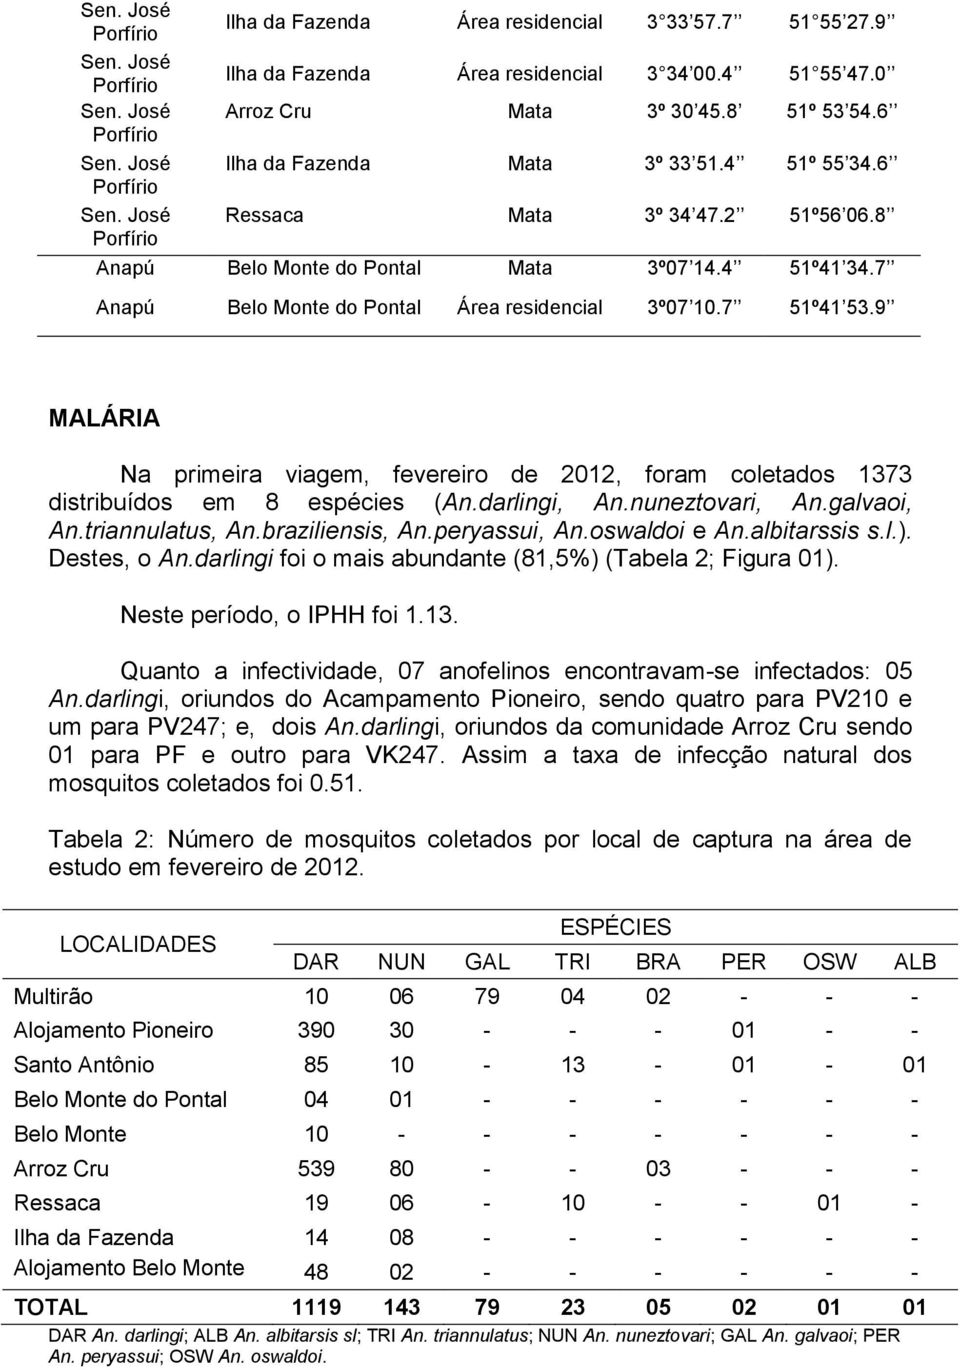 7 Anapú Belo Monte do Pontal Área residencial 3º07 10.7 51º41 53.9 MALÁRIA Na primeira viagem, fevereiro de 2012, foram coletados 1373 distribuídos em 8 espécies (An.darlingi, An.nuneztovari, An.